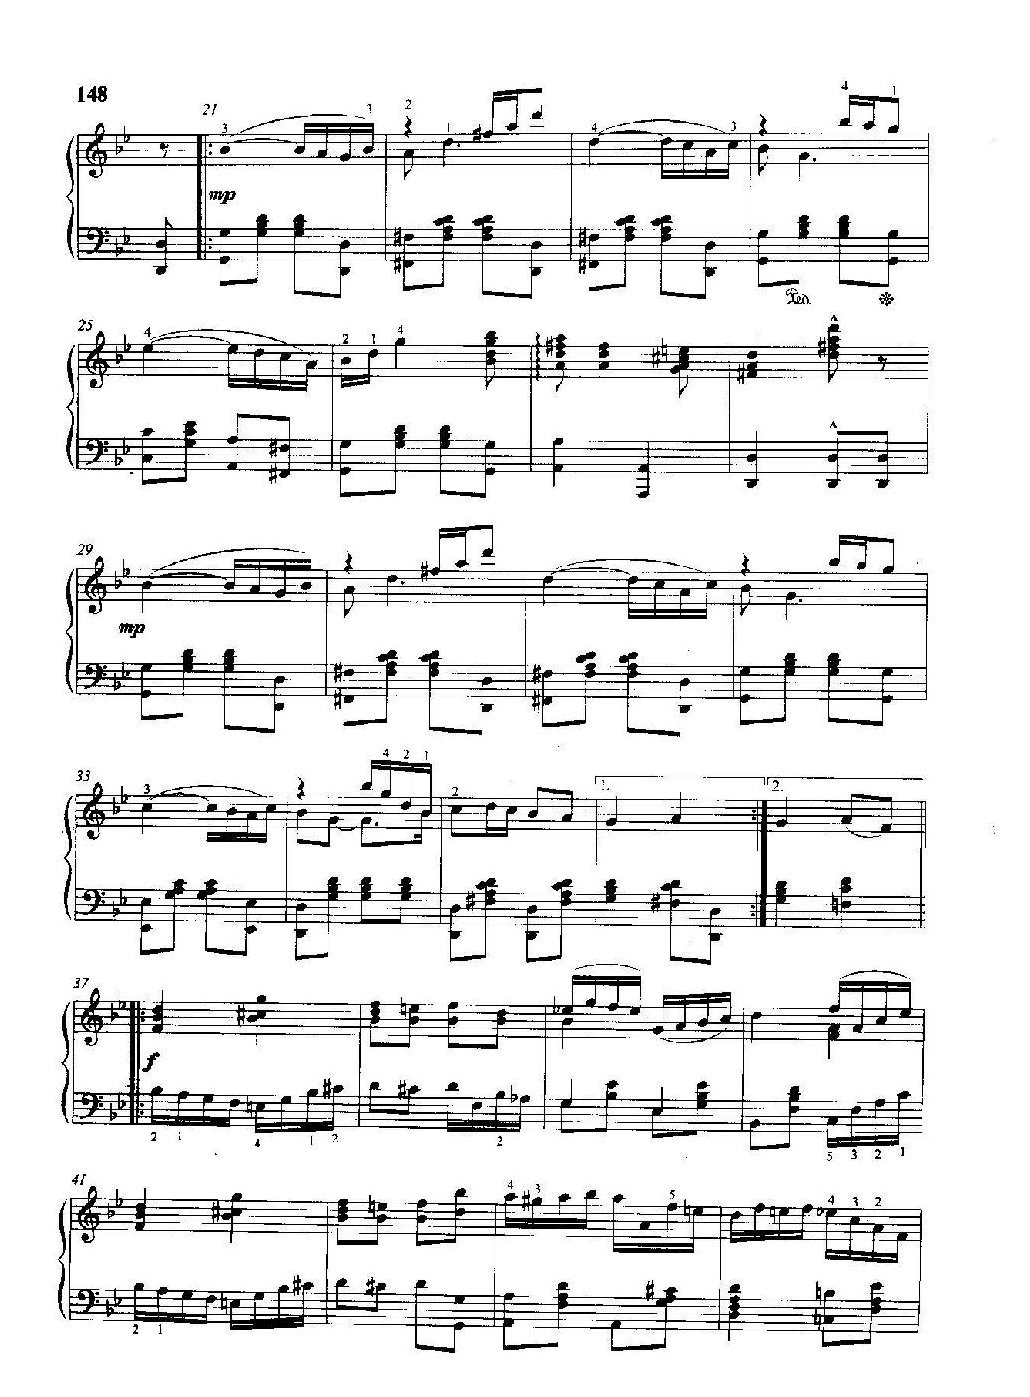 雷格泰姆钢琴乐谱《沉思雷格》雷格泰姆之王斯科特·乔普林